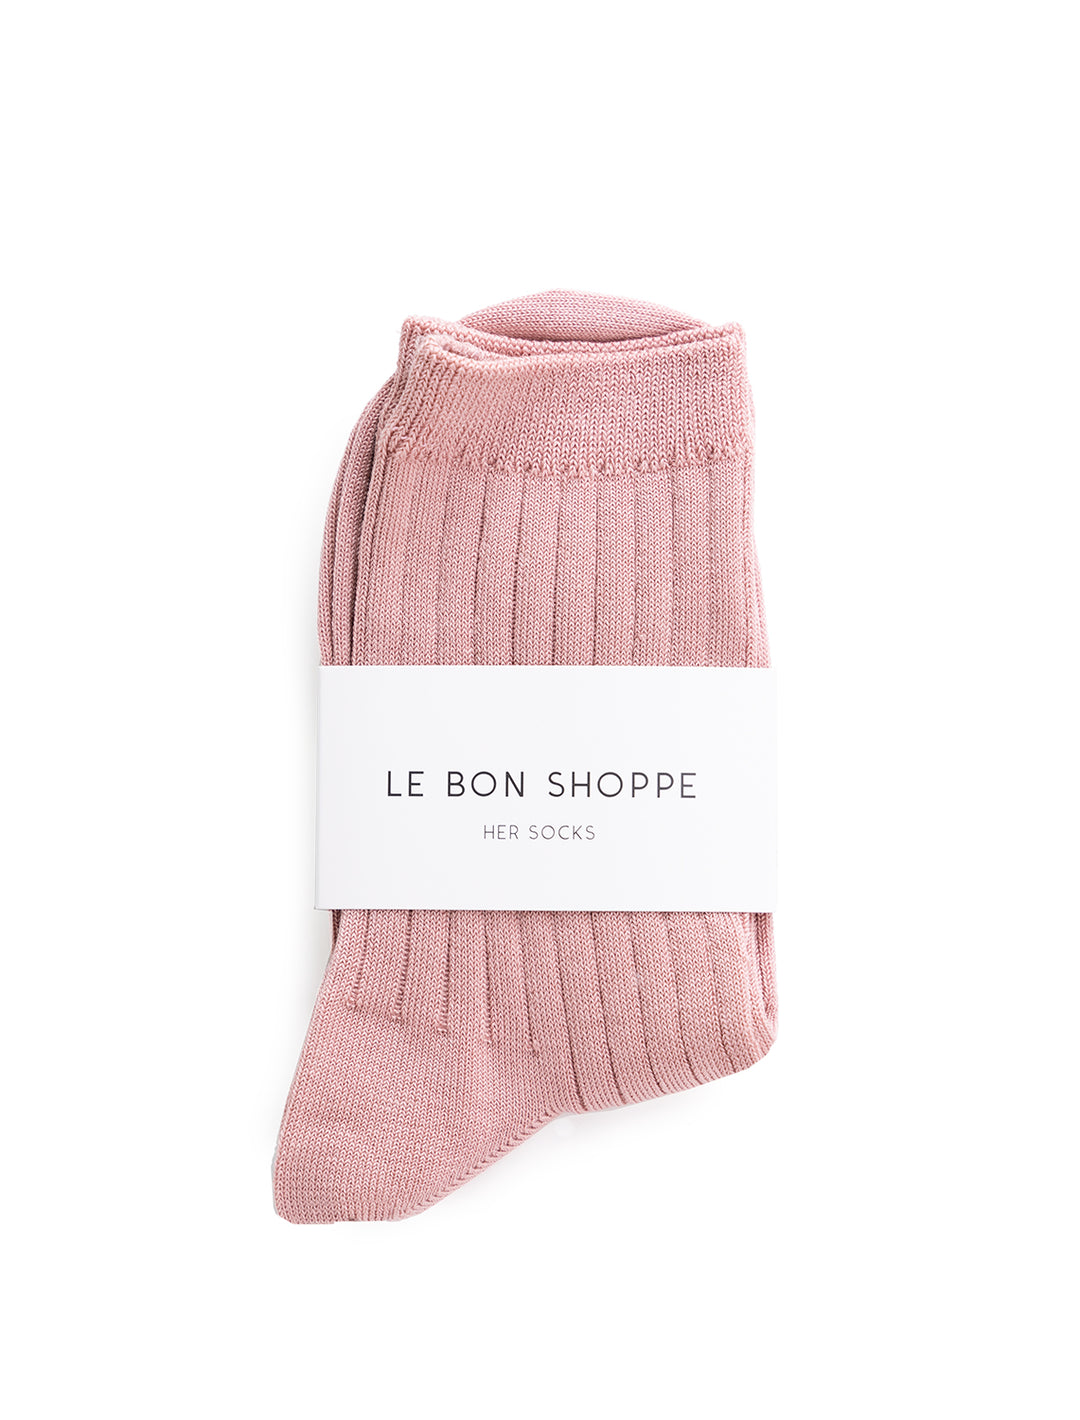 Front view of Le Bon Shoppe's her socks in desert rose.